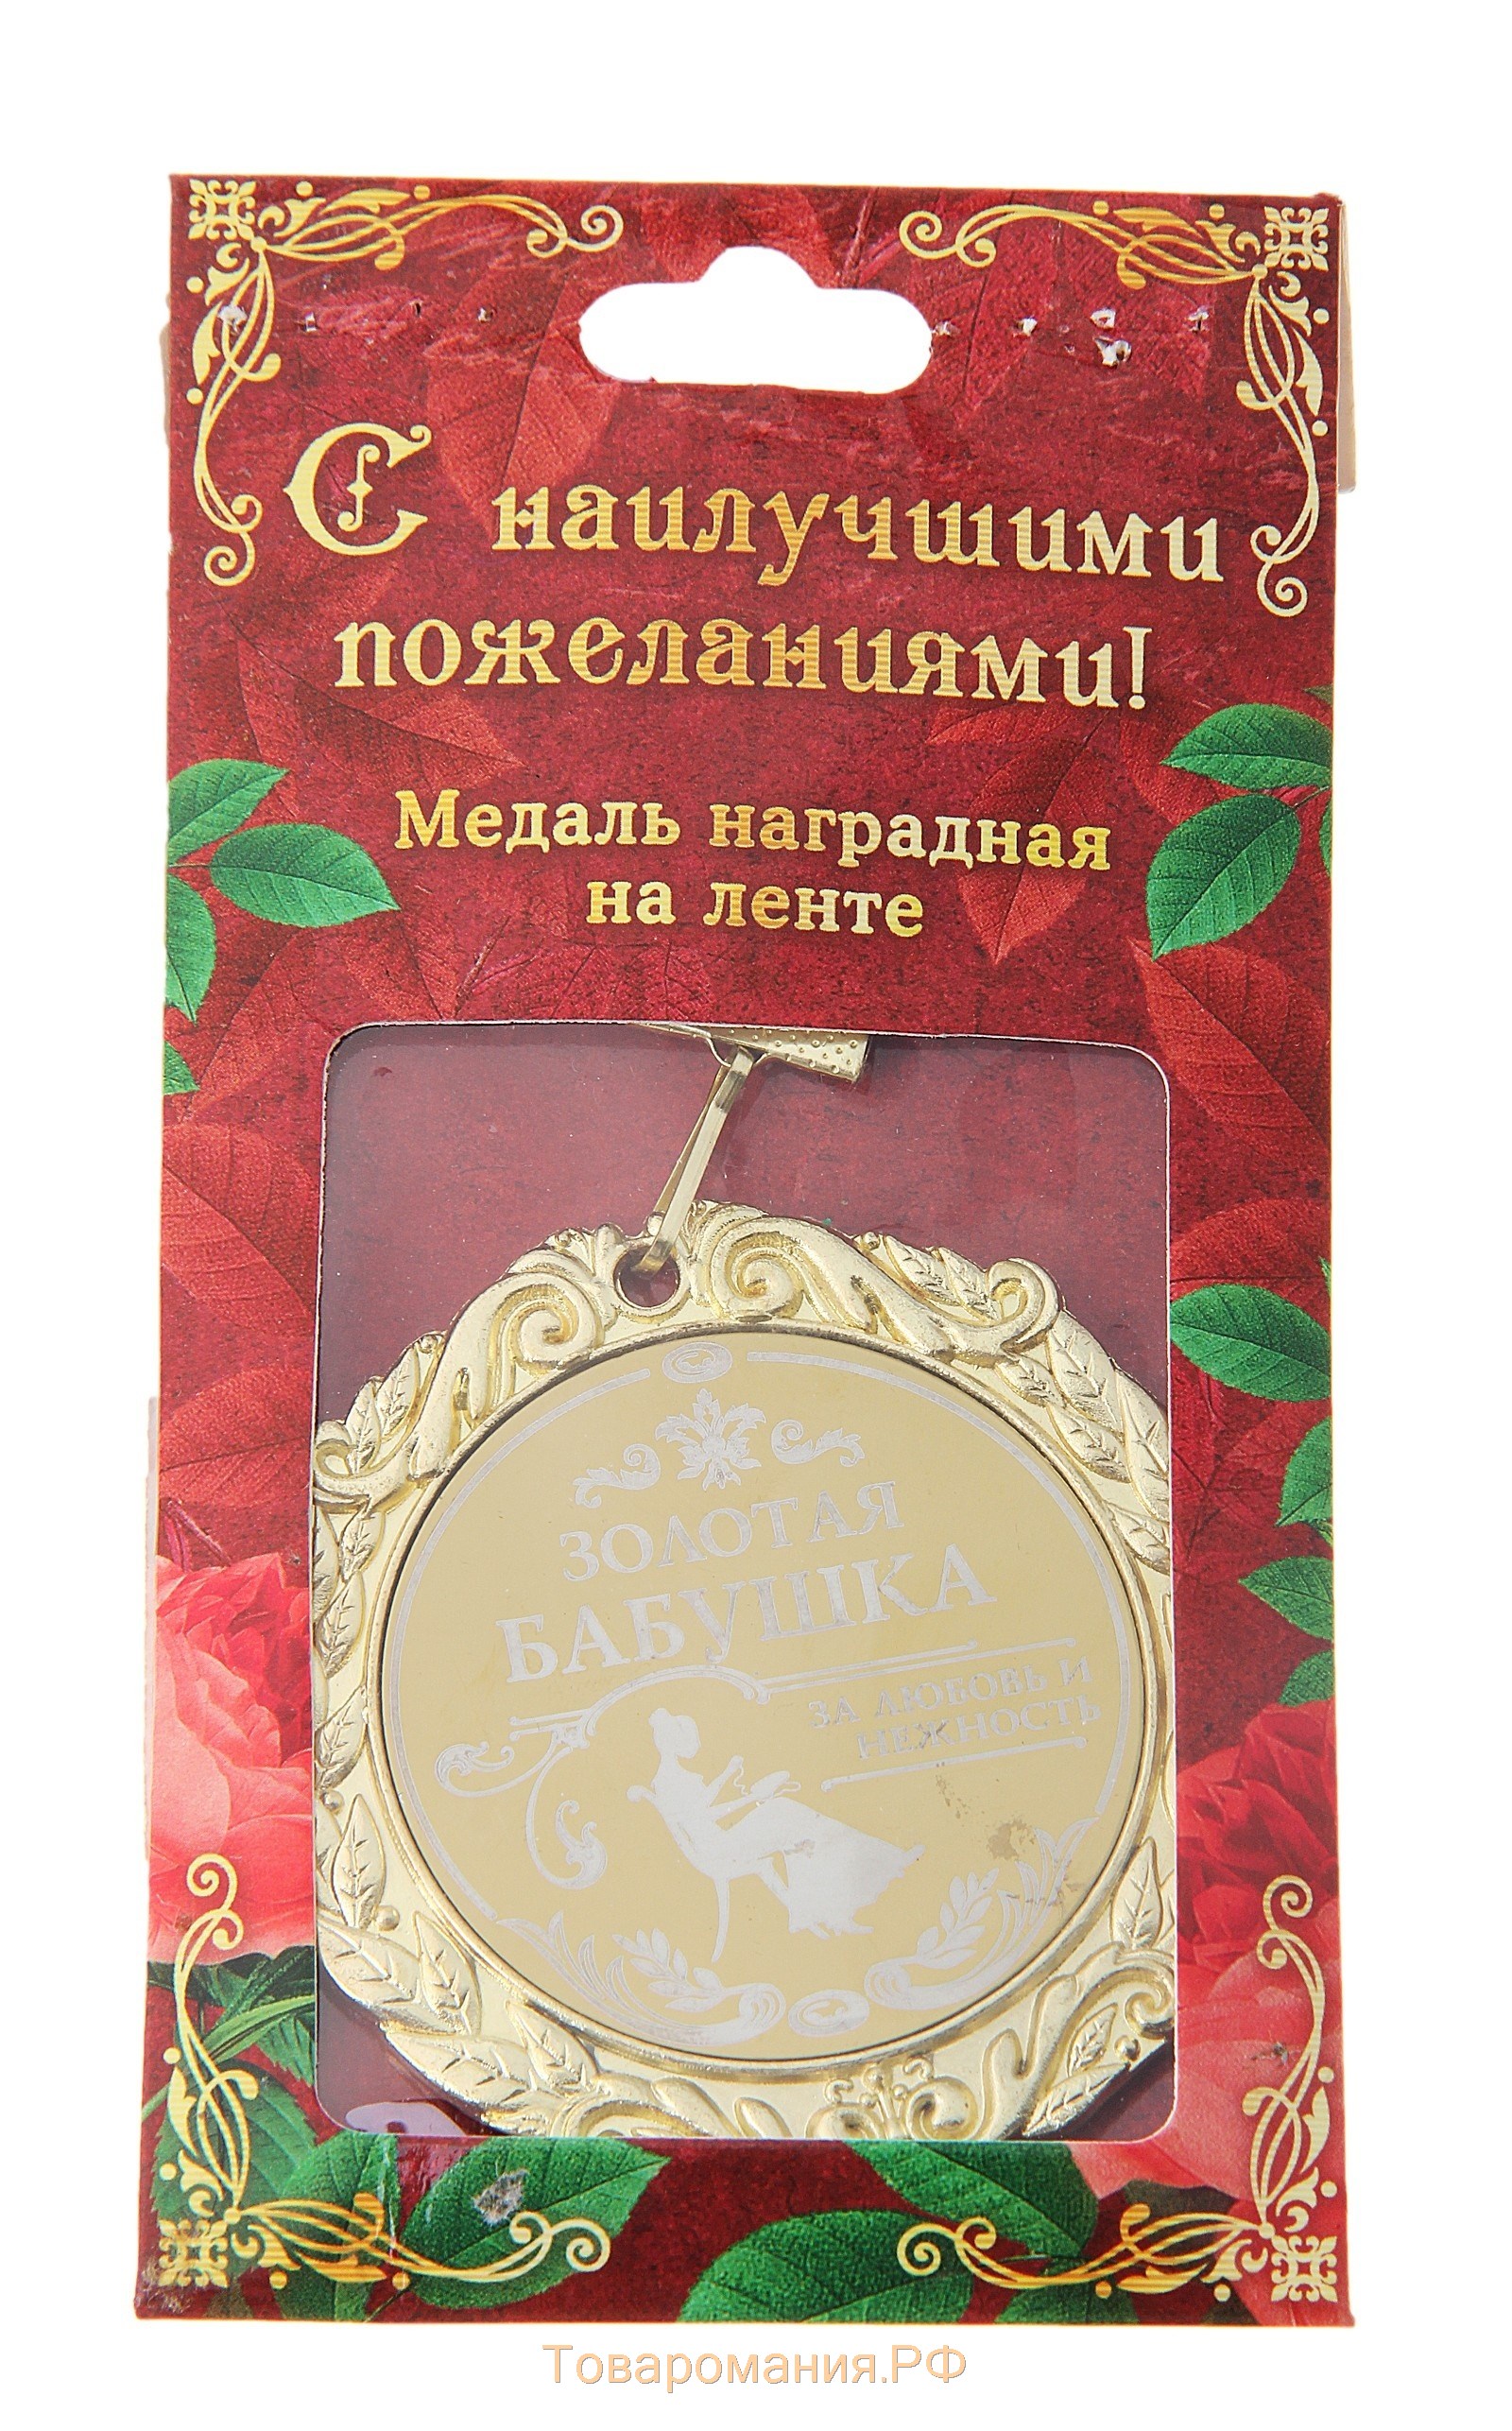 Медаль с лазерной гравировкой "Золотая бабушка", d=7 см